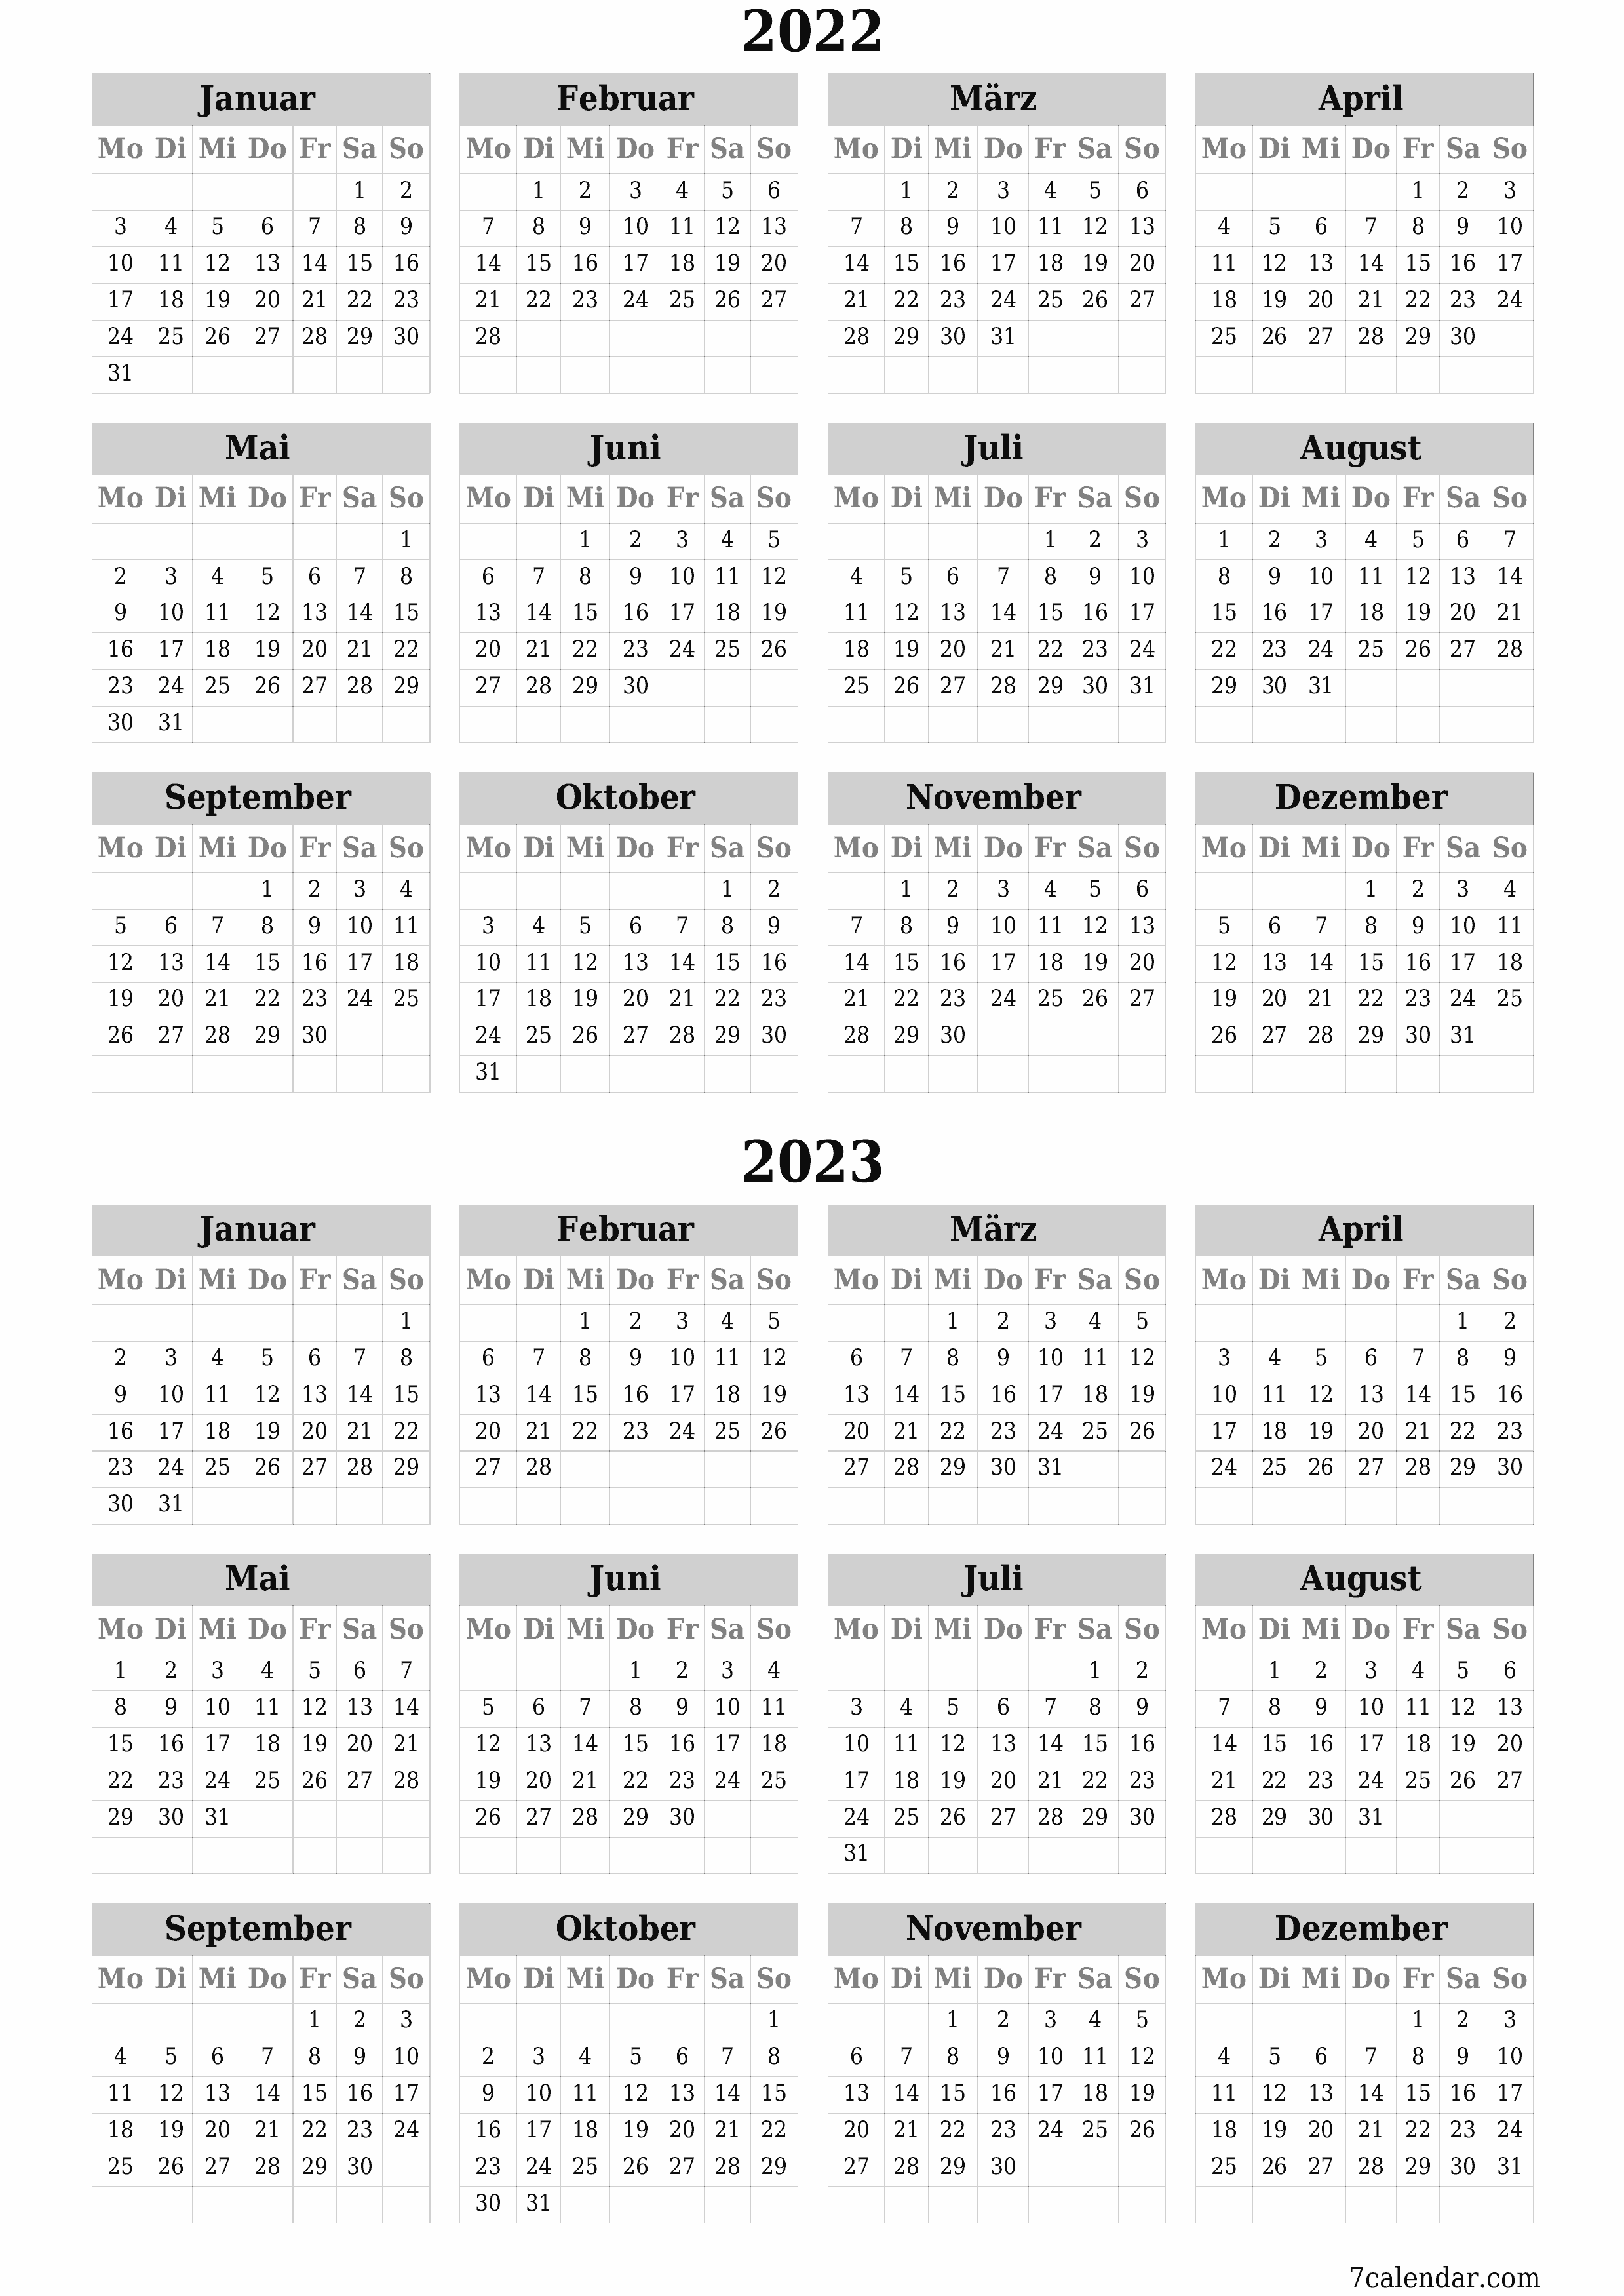 Leerer Jahreskalender für das Jahr 2022, 2023 speichern und als PDF PNG German - 7calendar.com drucken